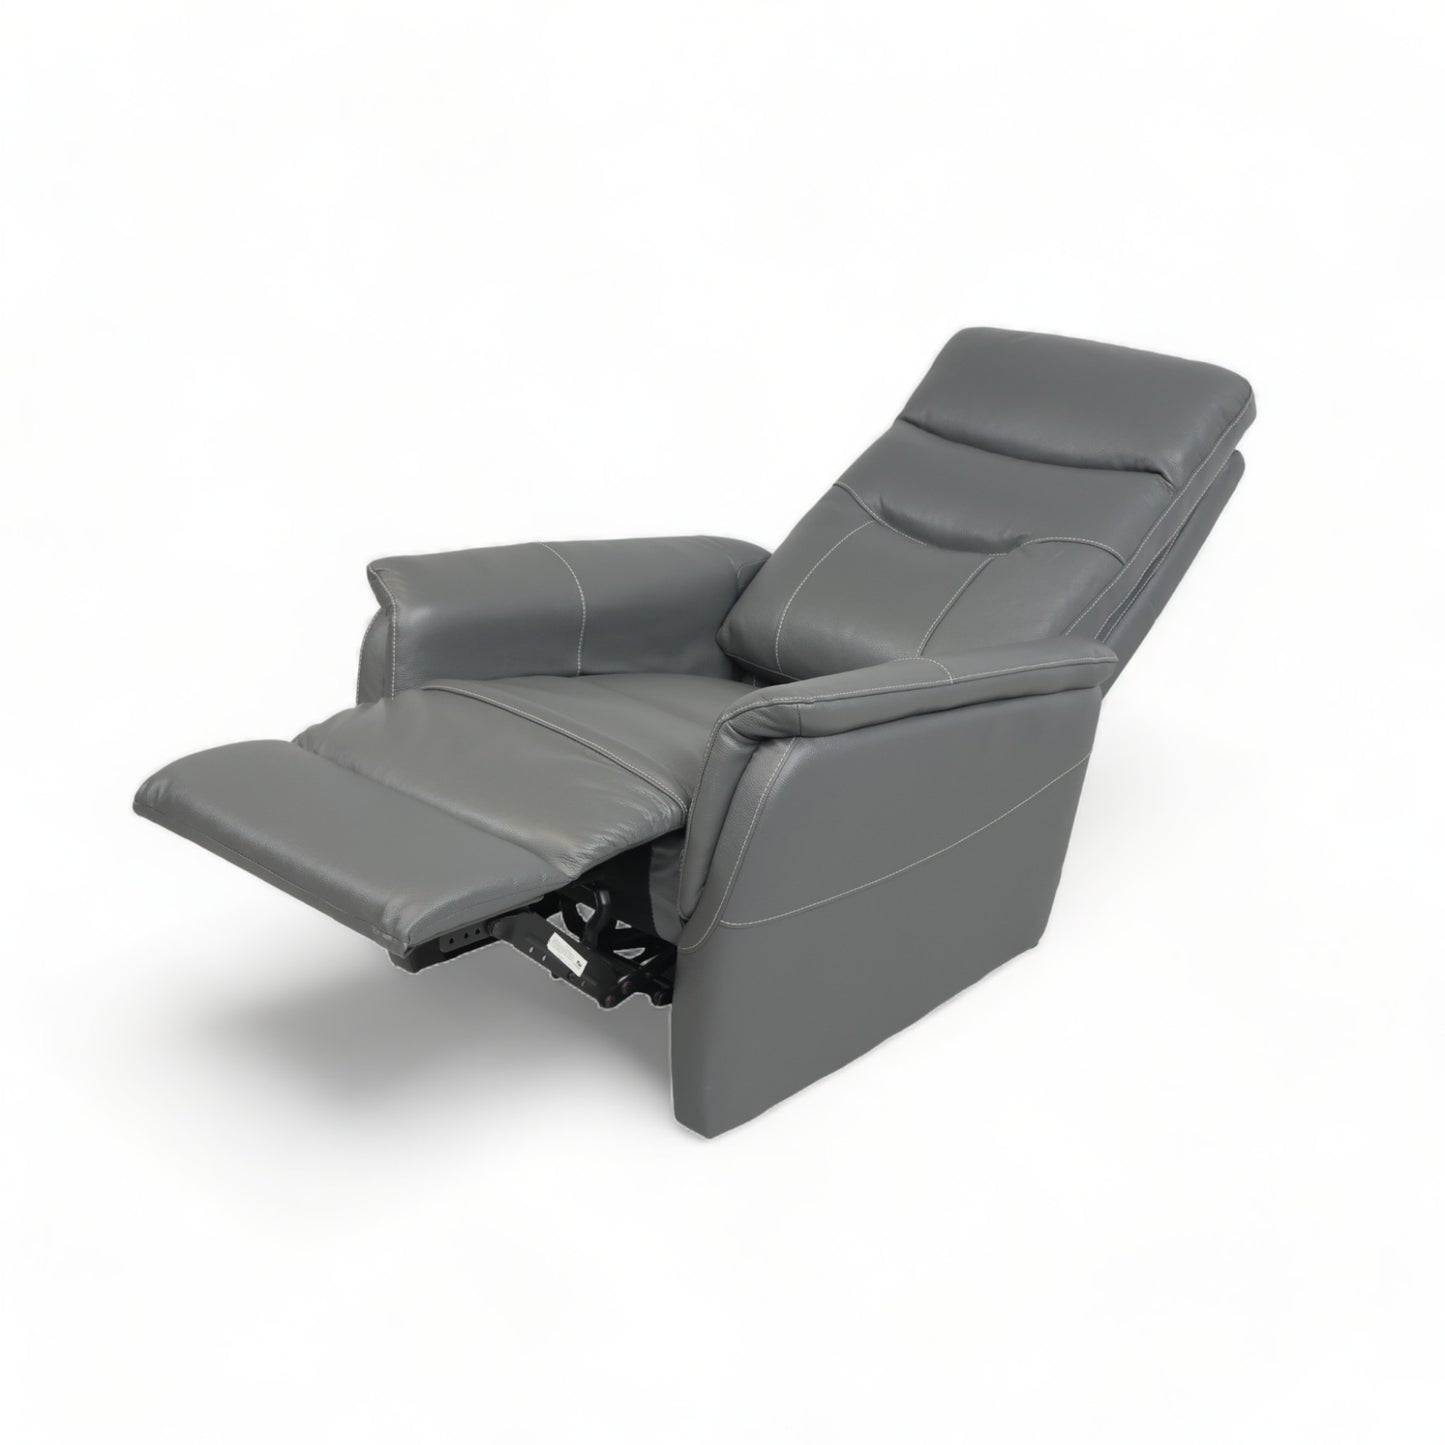 Nyrenset | Mørk grå lenestol i skinn med recliner